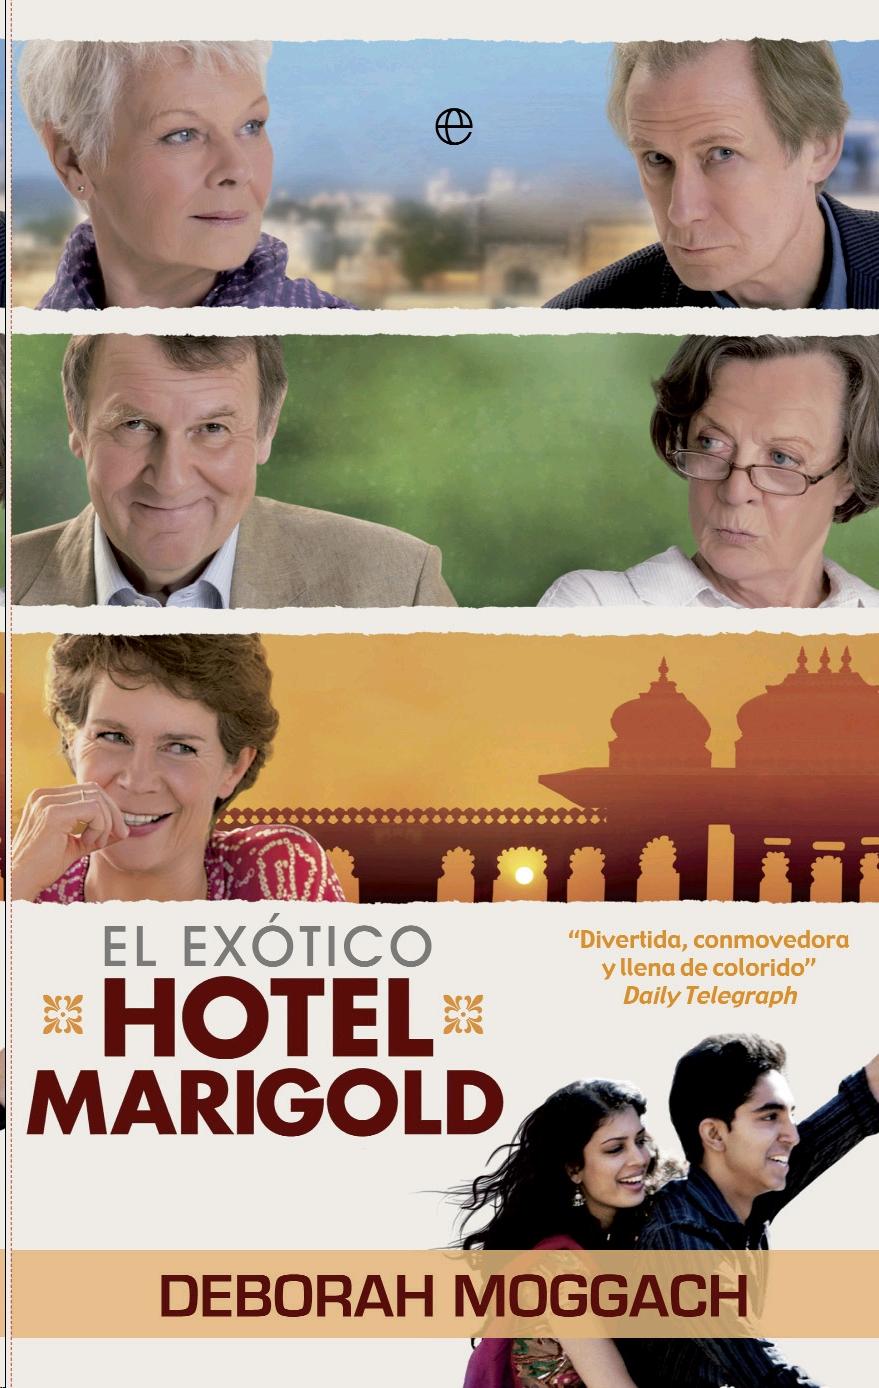 Exotico Hotel Marigold, El